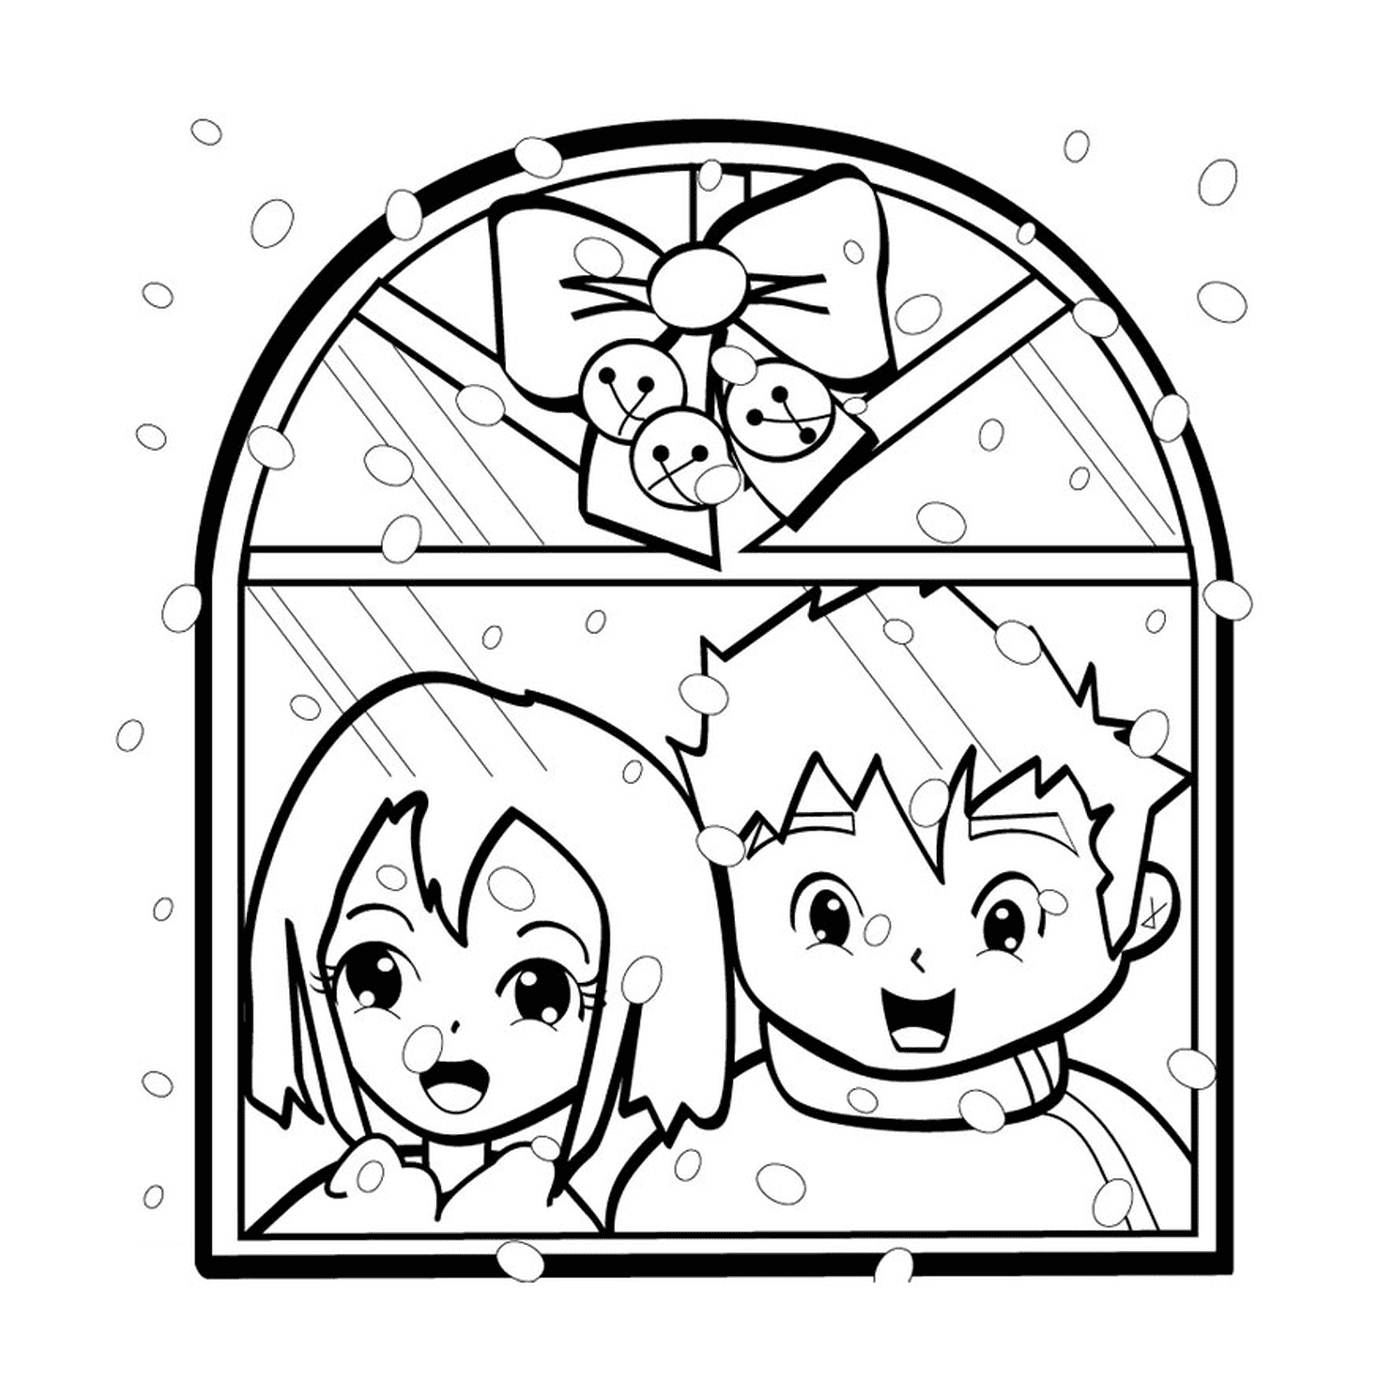  children in front of window 